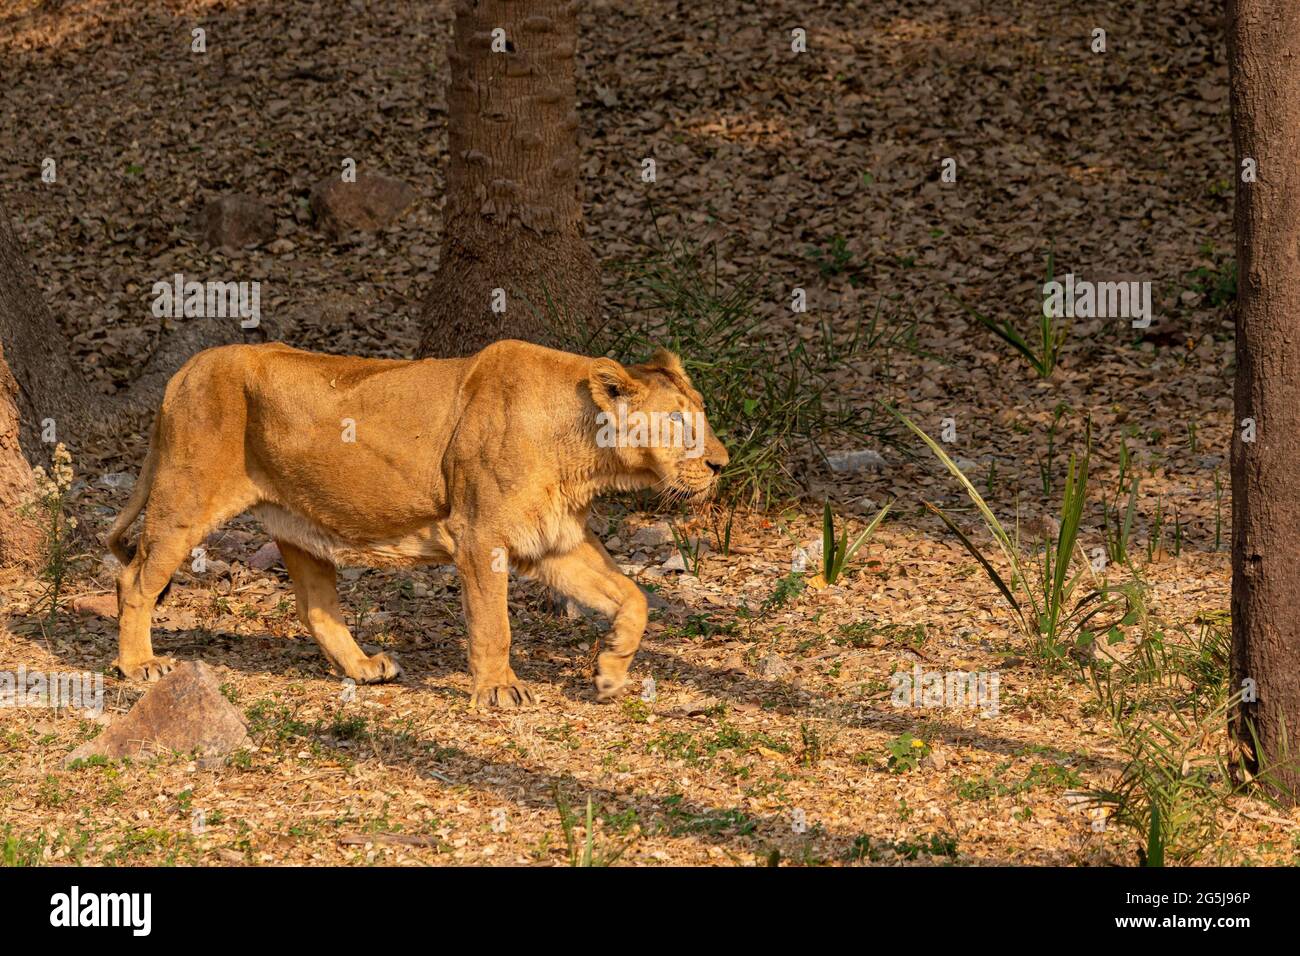 Leone allo Zoo , fotografia di fauna selvatica Foto Stock